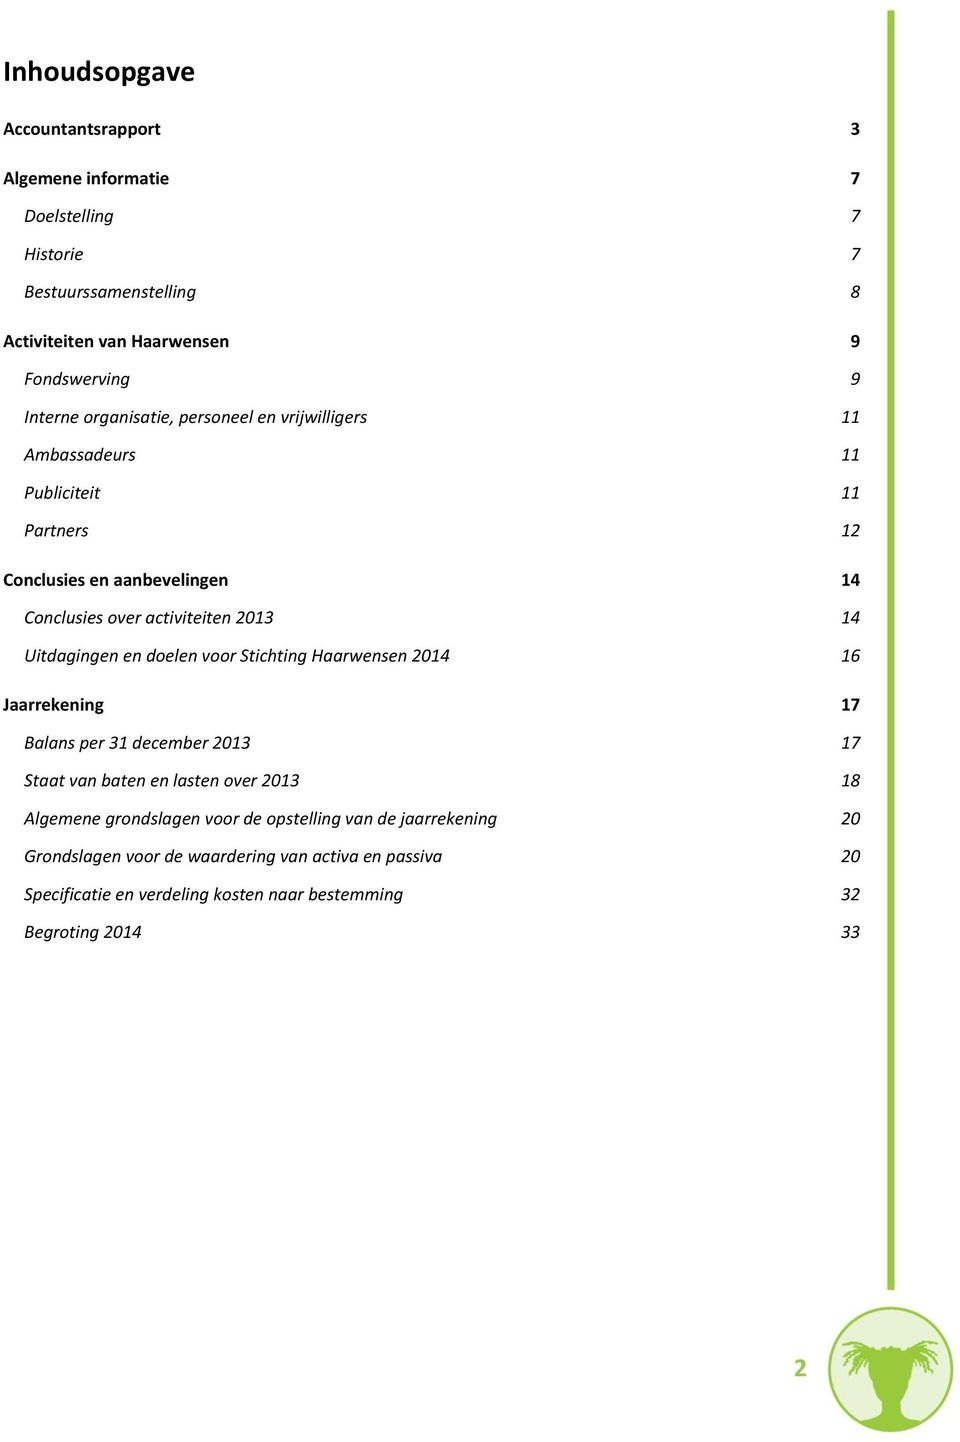 Uitdagingen en doelen voor Stichting Haarwensen 2014 16 Jaarrekening 17 Balans per 31 december 2013 17 Staat van baten en lasten over 2013 18 Algemene